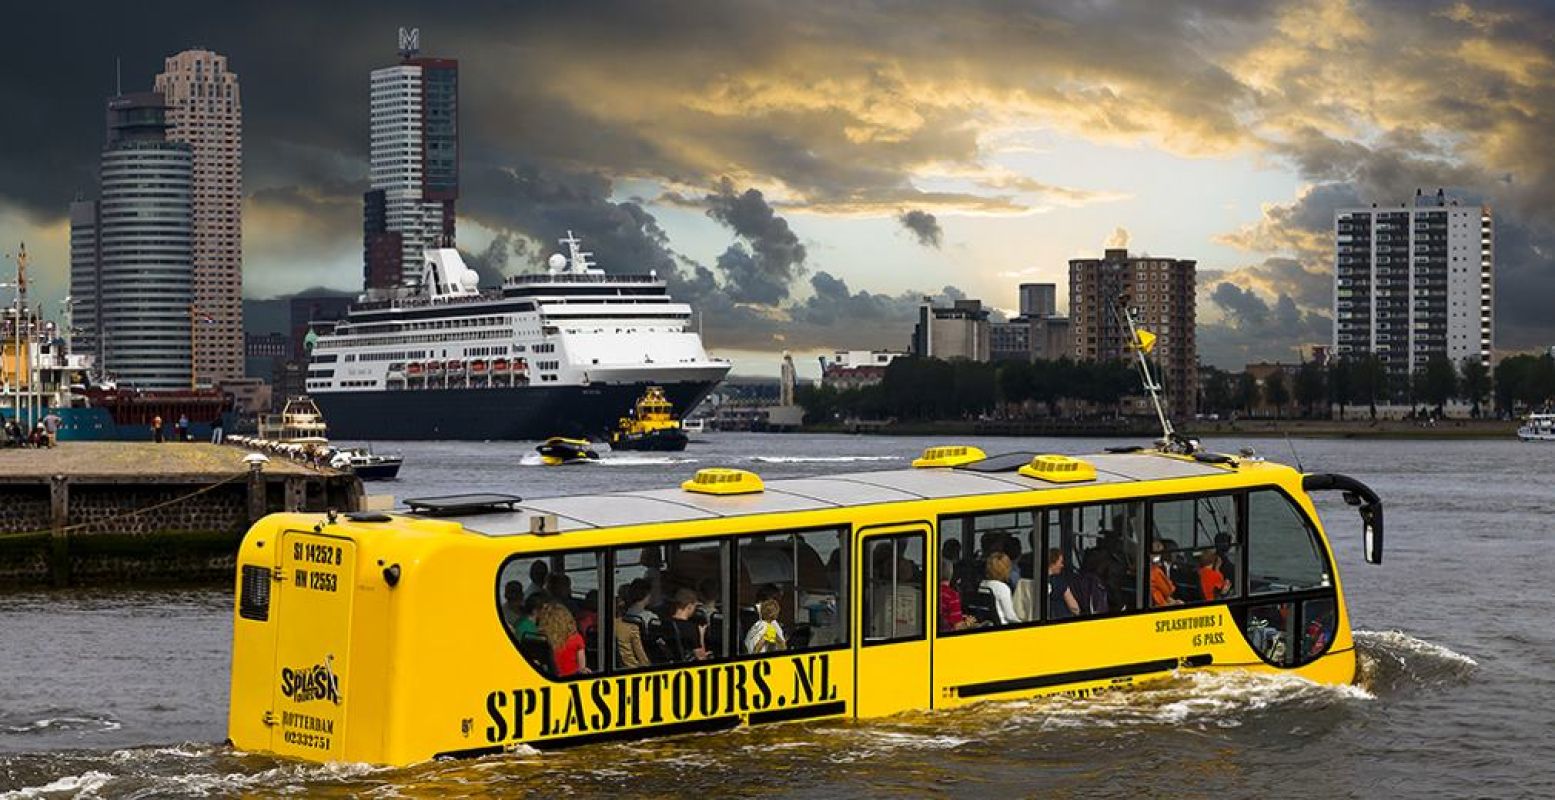 De haven van Rotterdam in met de bus, uhh... boot van Splashtours. Foto: Splashtours Rotterdam